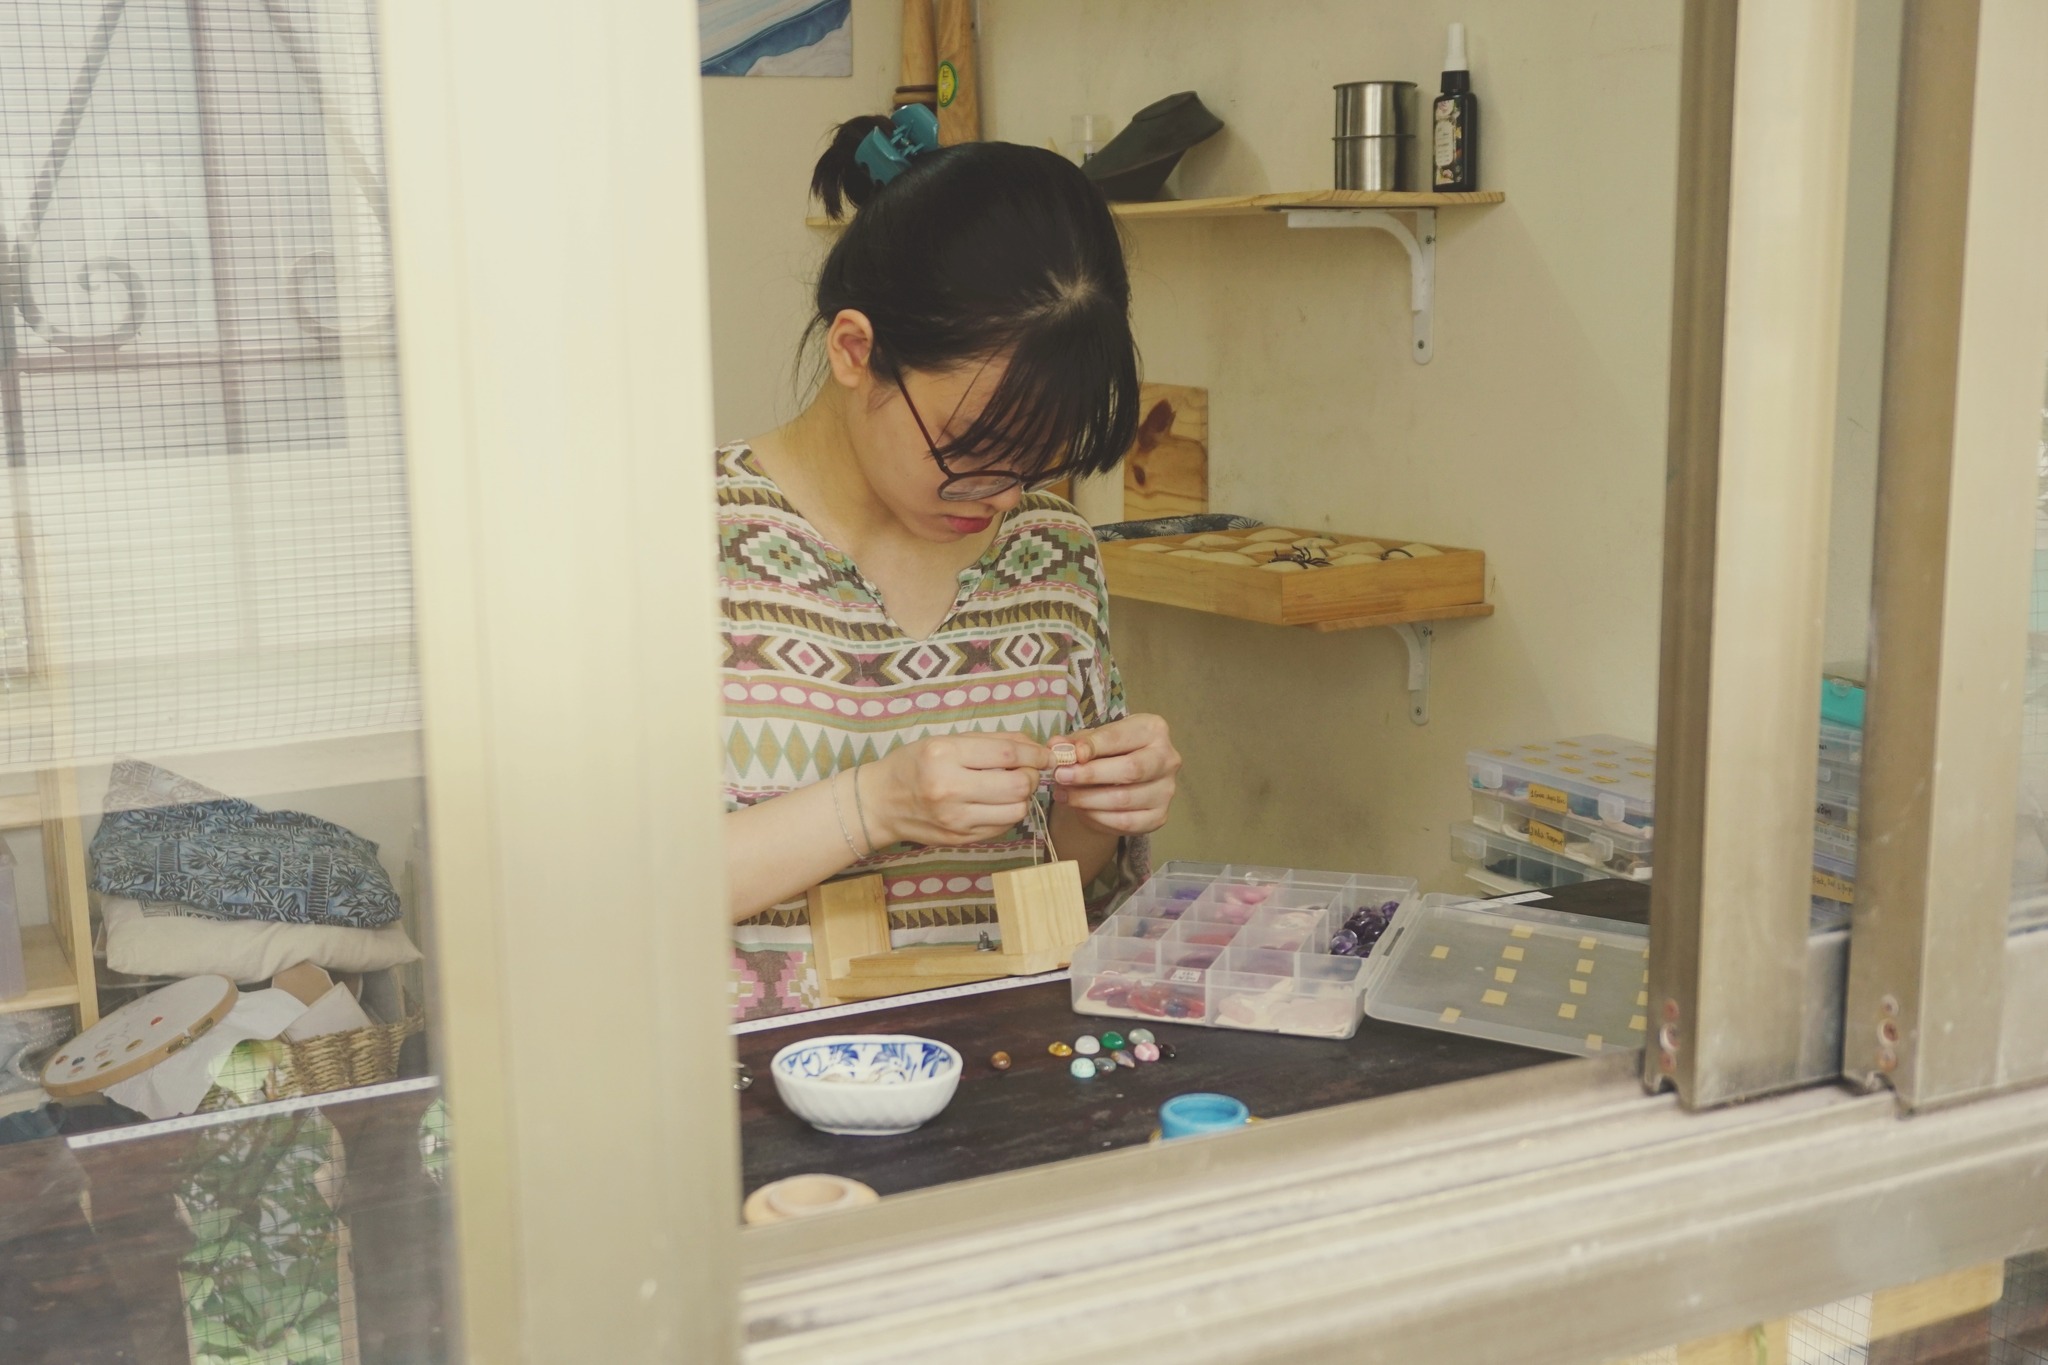 Yen, making beautiful jewellery